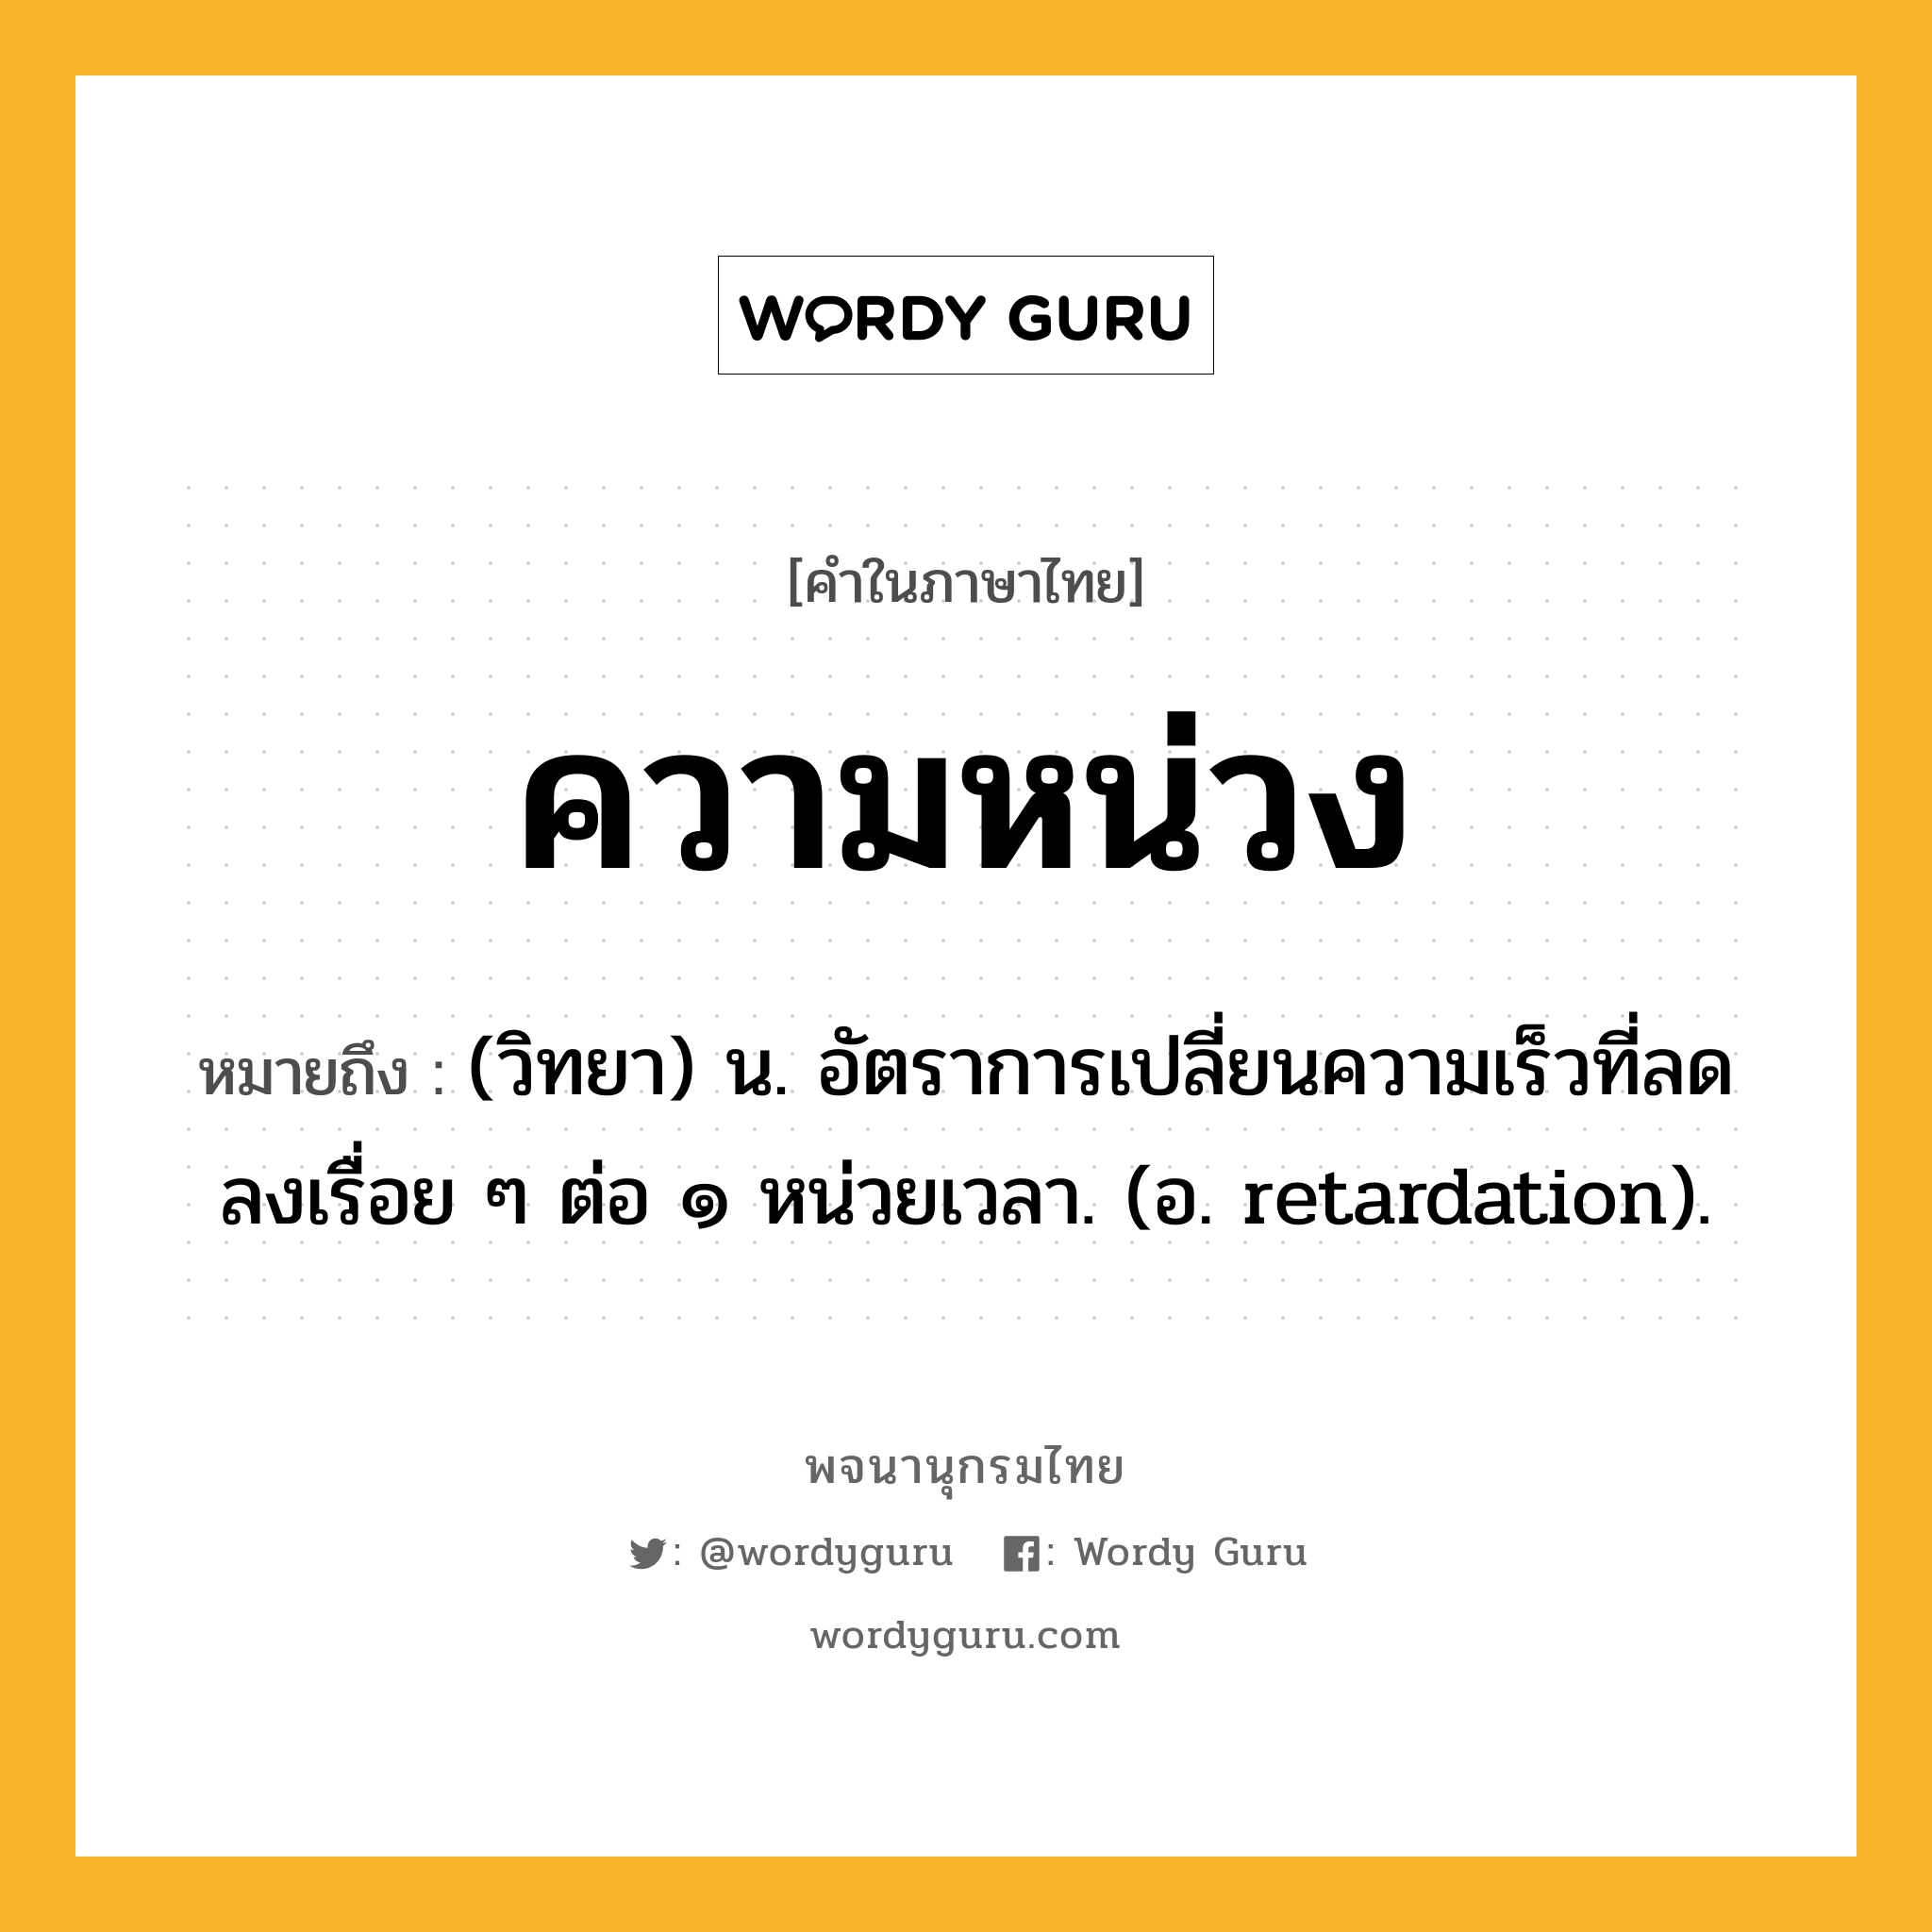 ความหน่วง ความหมาย หมายถึงอะไร?, คำในภาษาไทย ความหน่วง หมายถึง (วิทยา) น. อัตราการเปลี่ยนความเร็วที่ลดลงเรื่อย ๆ ต่อ ๑ หน่วยเวลา. (อ. retardation).